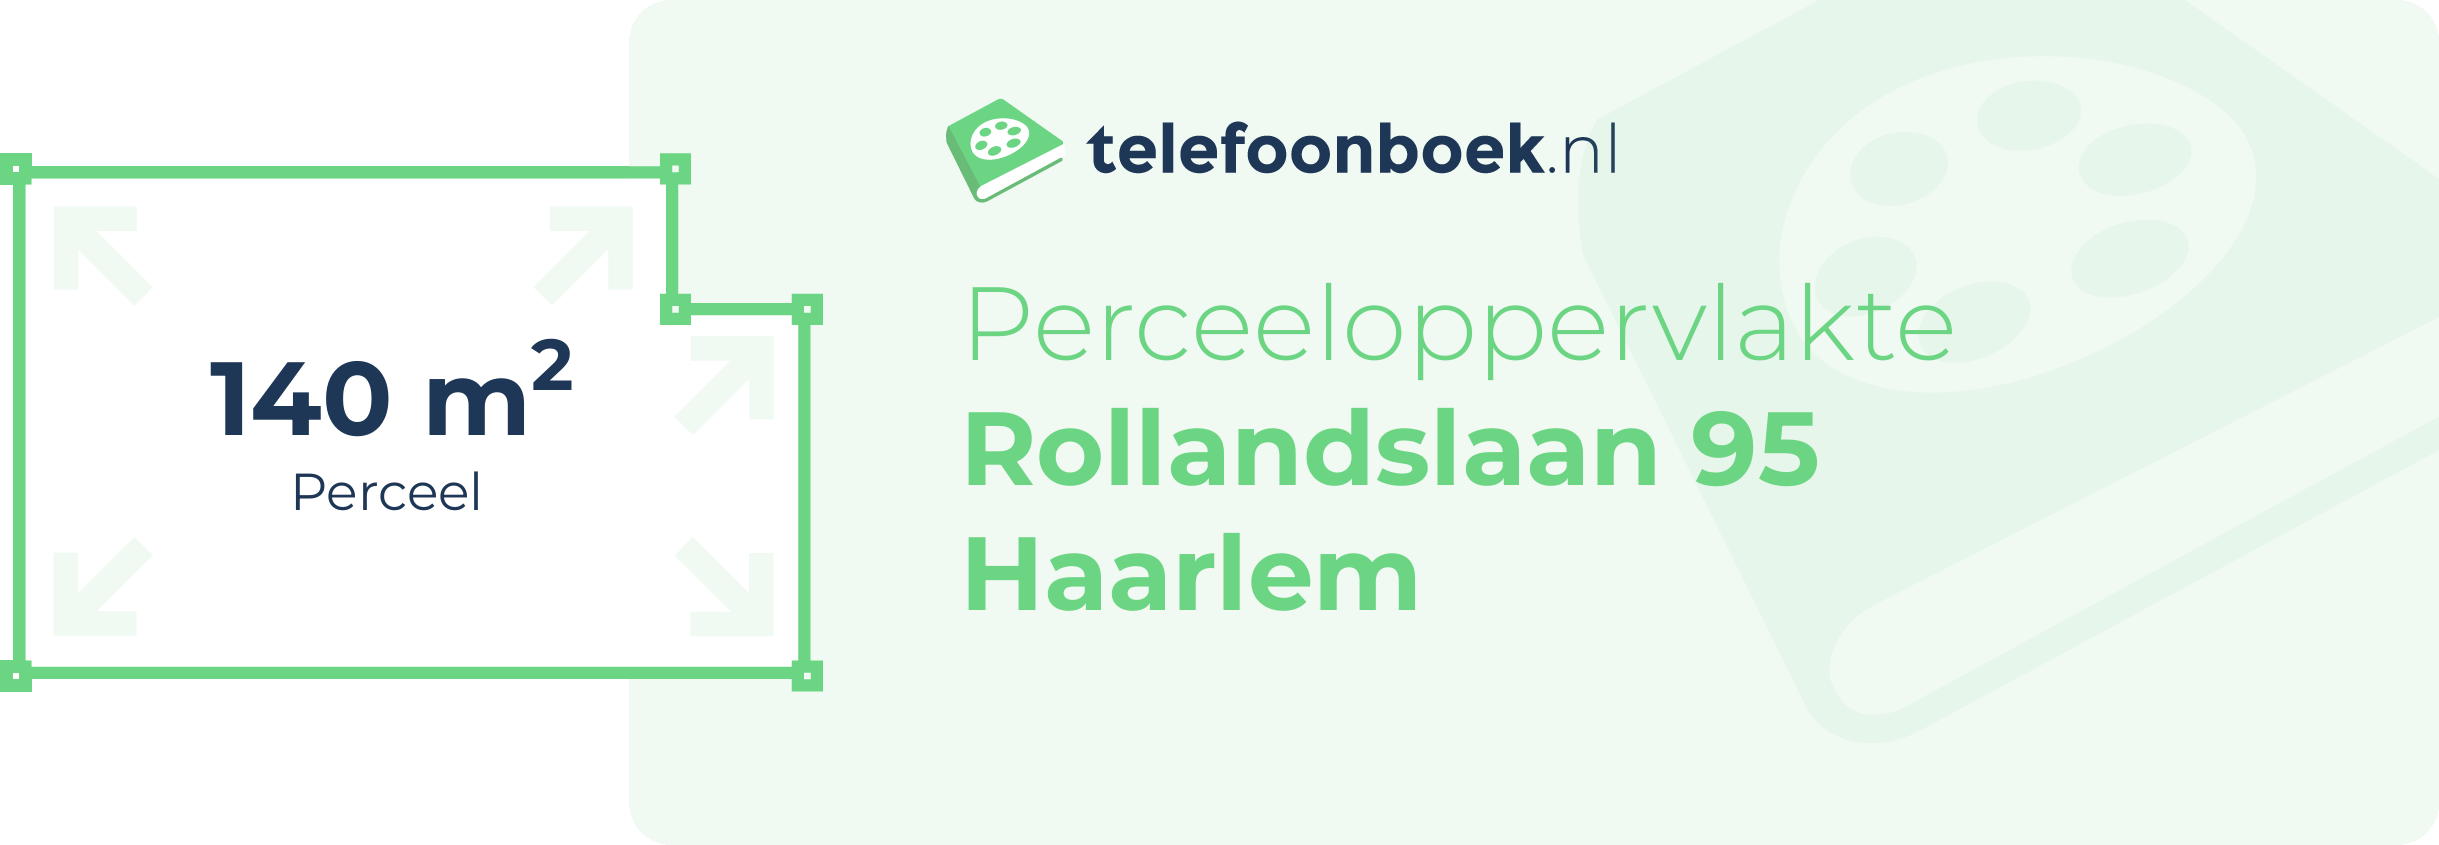 Perceeloppervlakte Rollandslaan 95 Haarlem